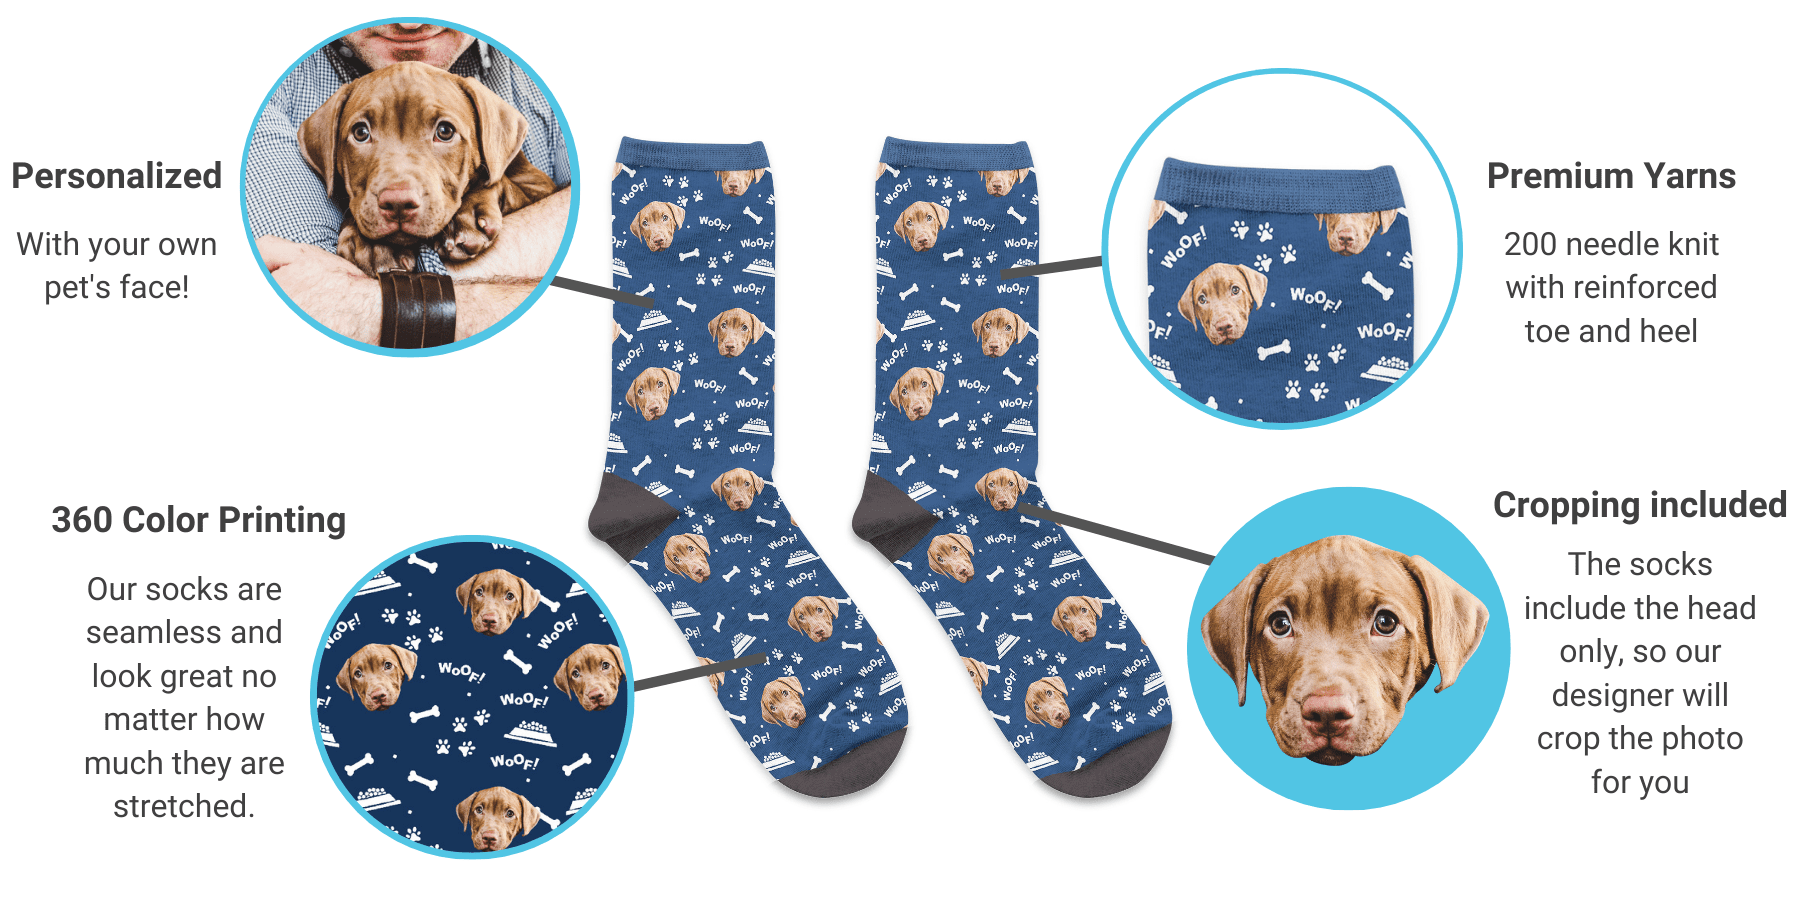 custom pet sock companies 